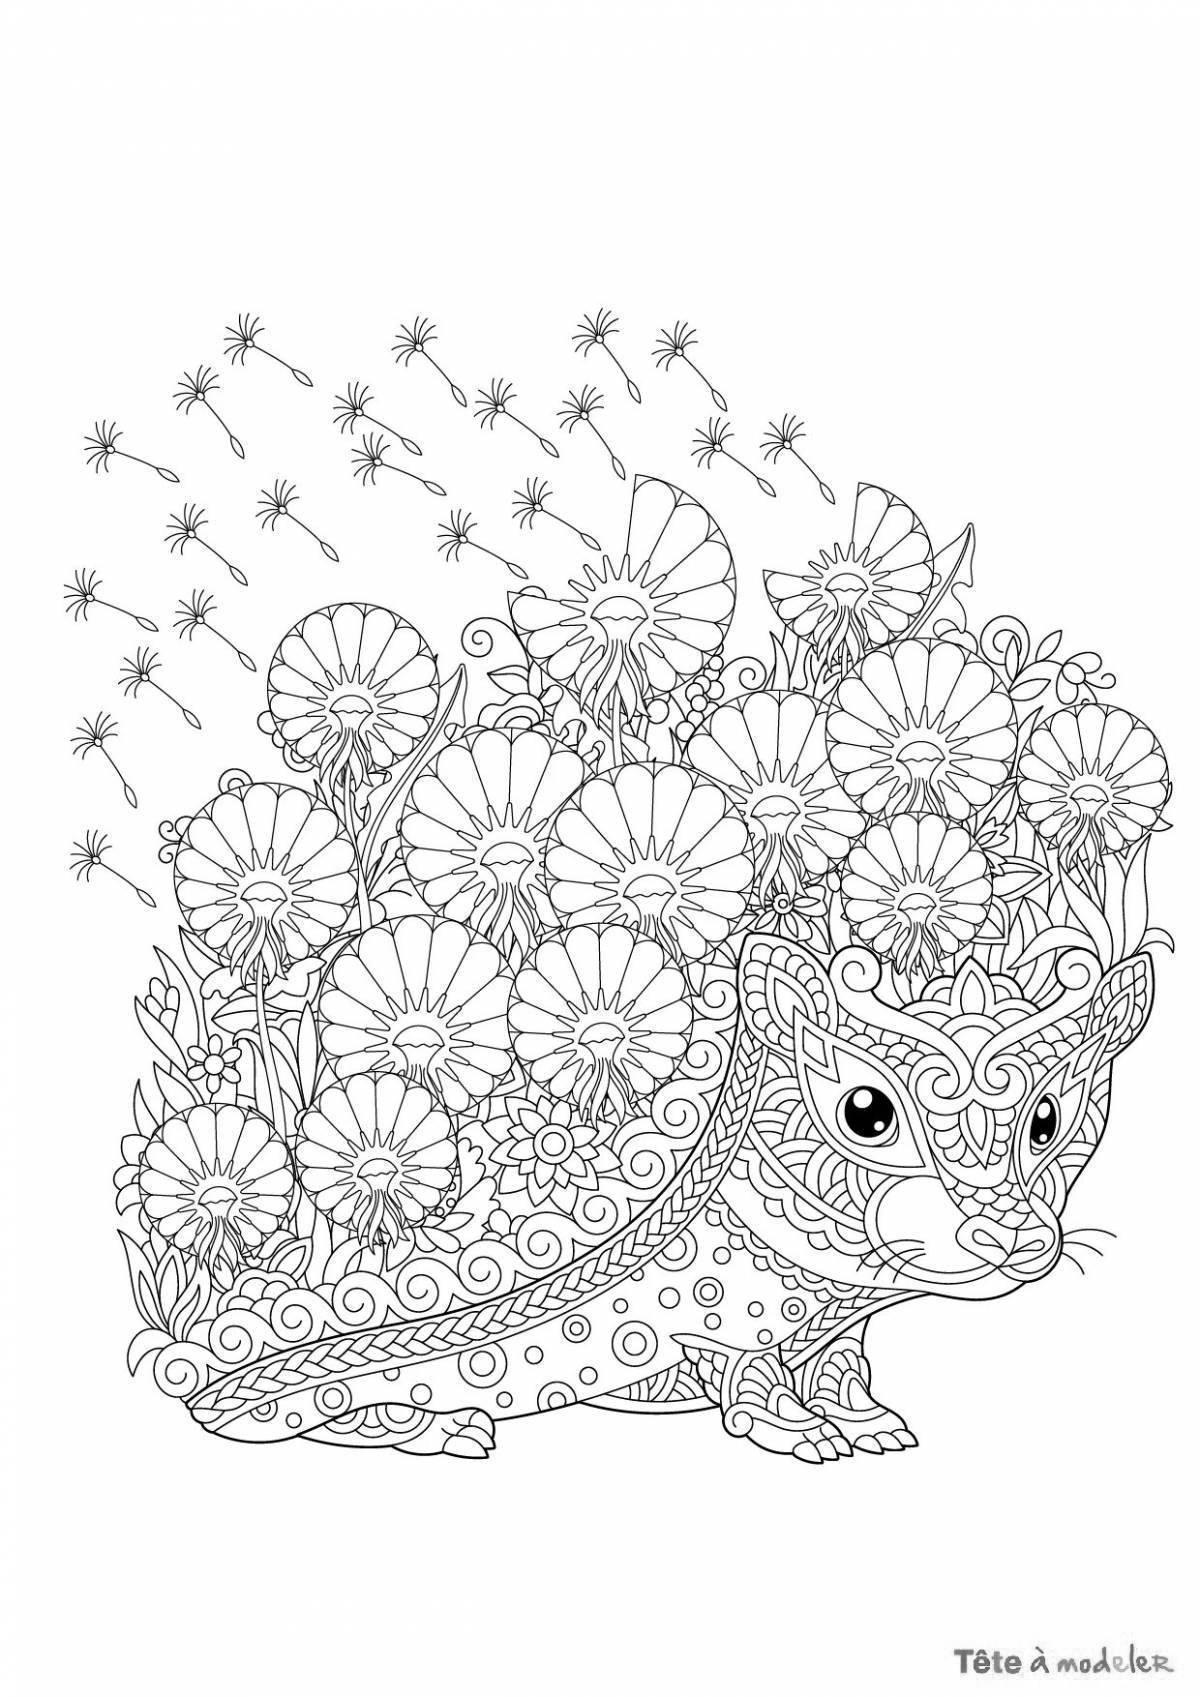 Coloring book glamor antistress hedgehog